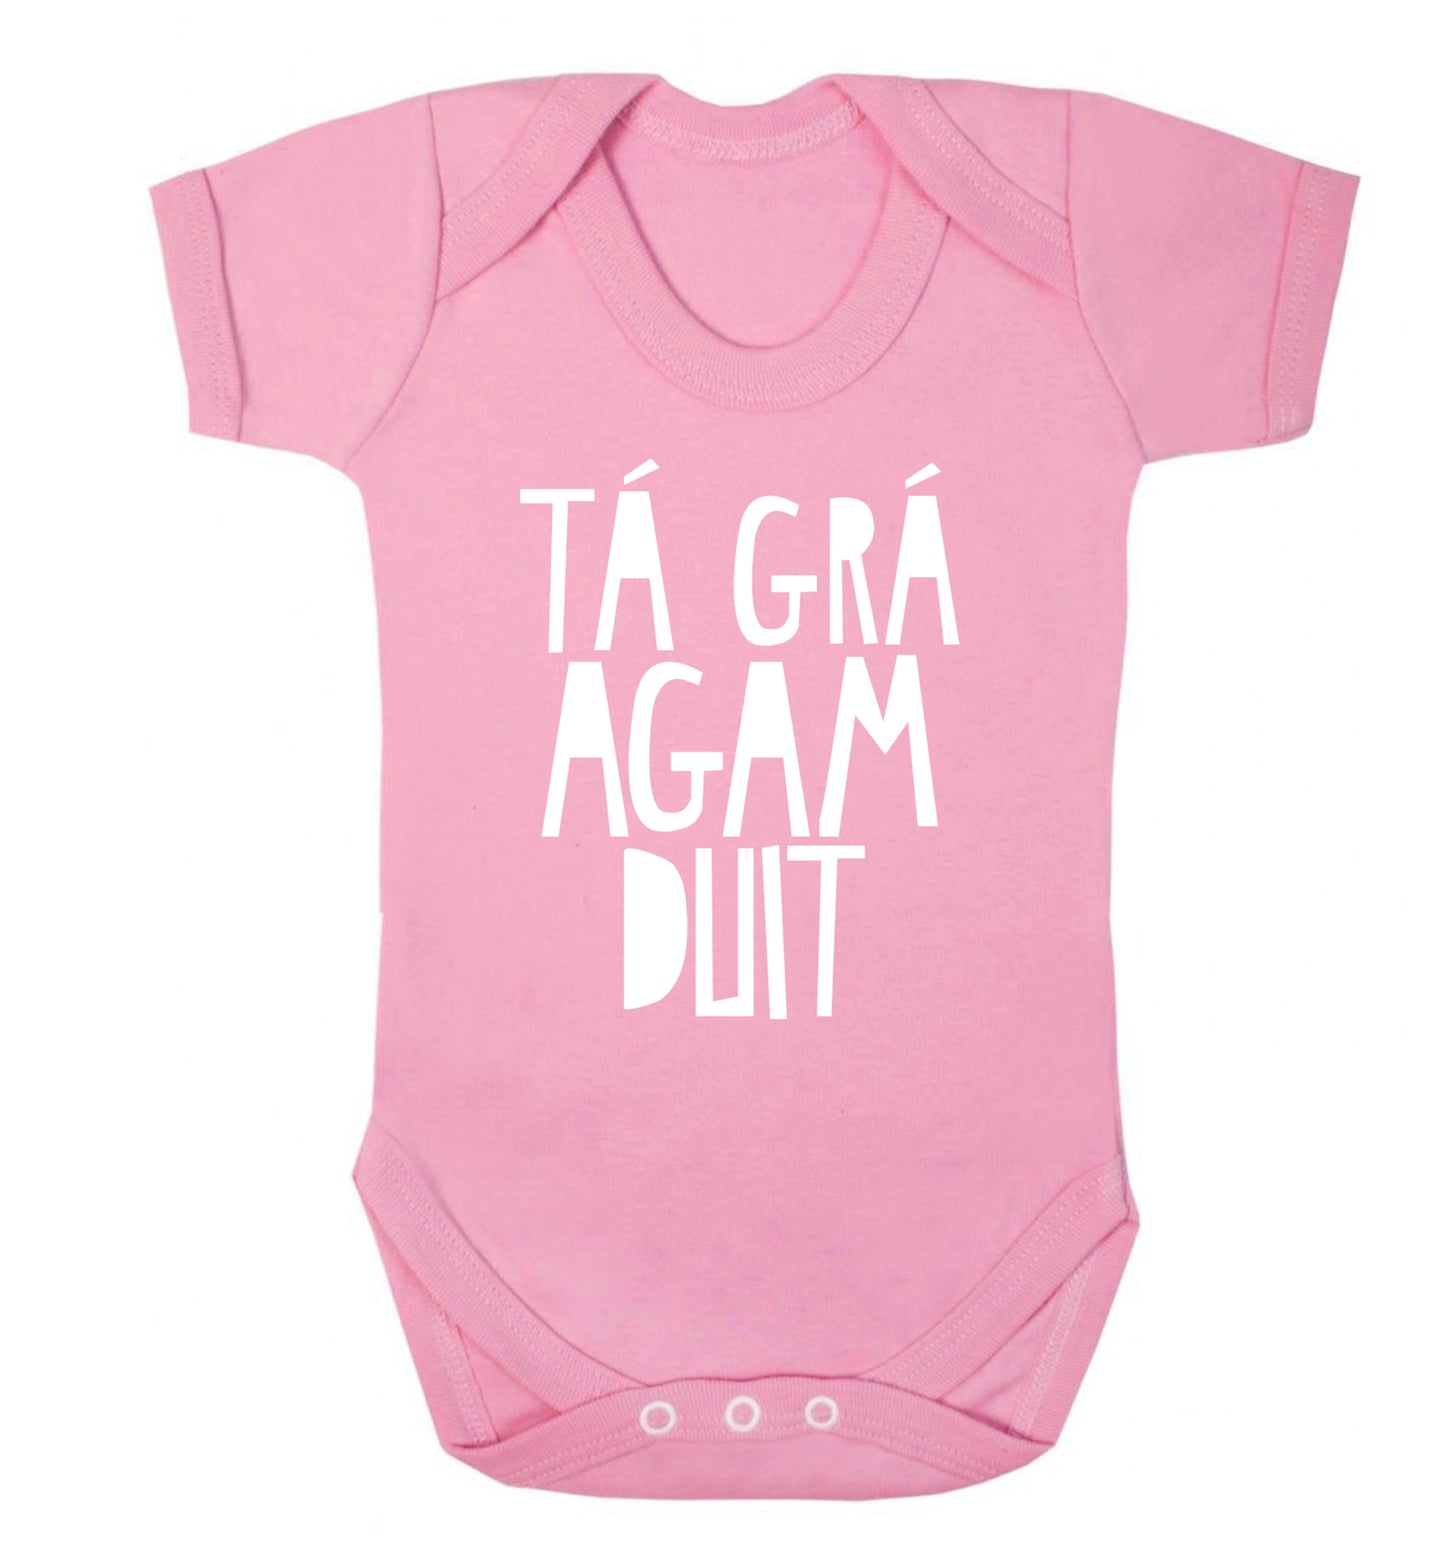 T‚Ä° gr‚Ä° agam duit - I love you Baby Vest pale pink 18-24 months